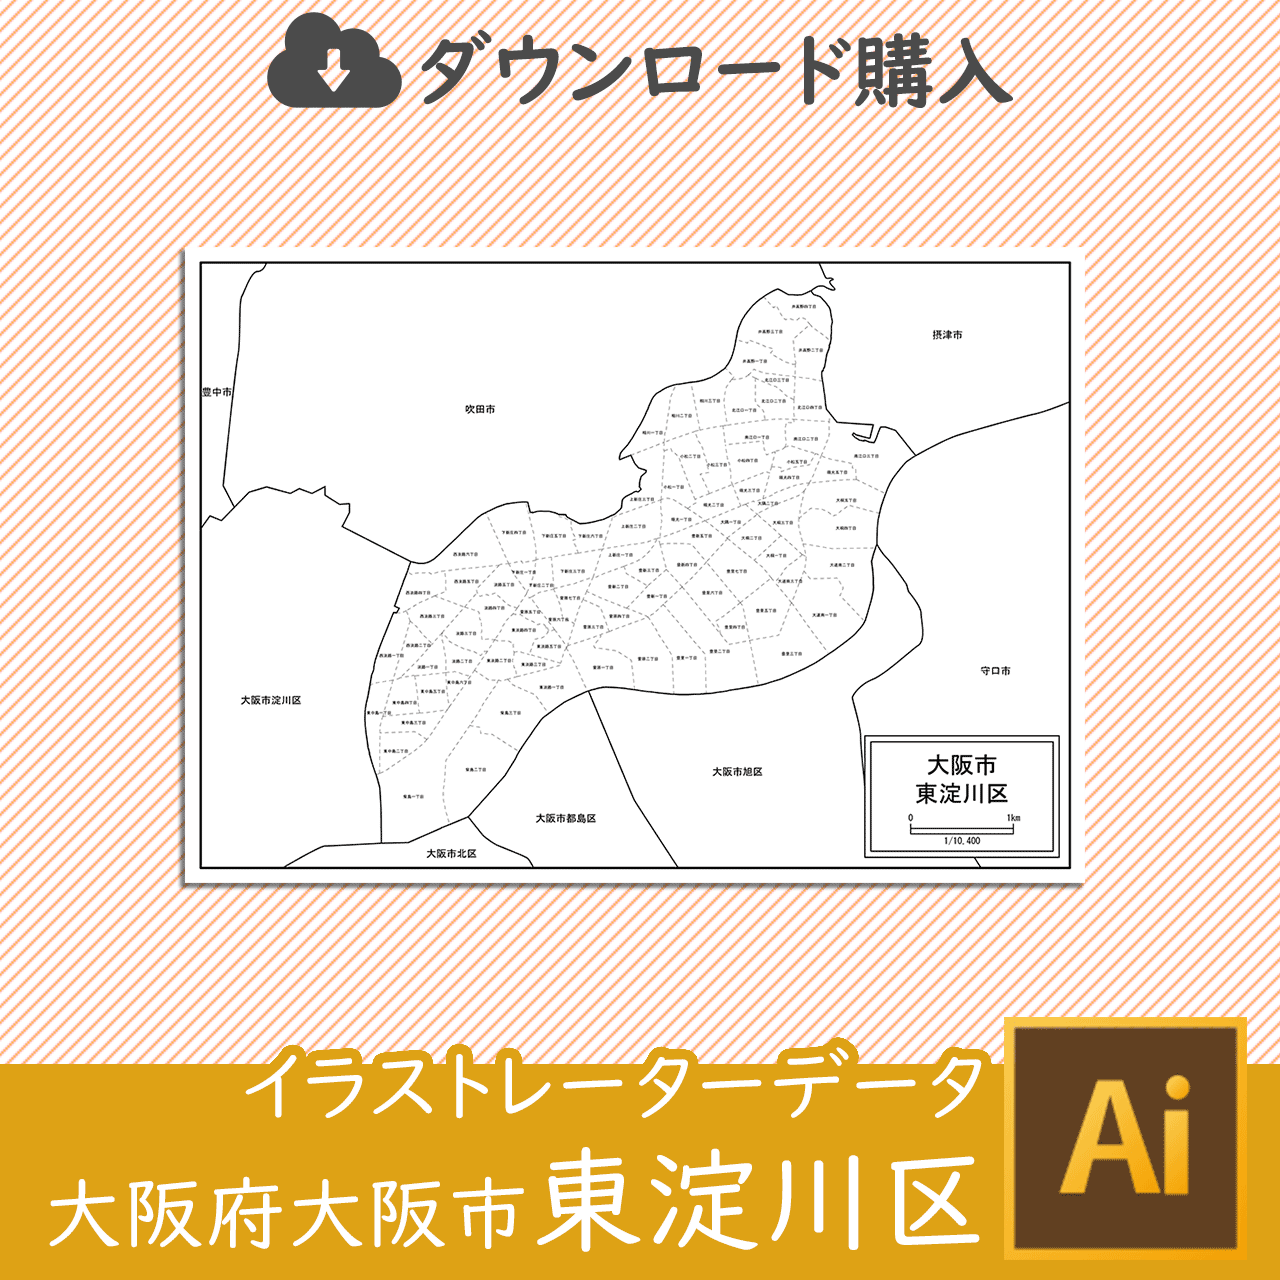 大阪市東淀川区のaiデータのサムネイル画像